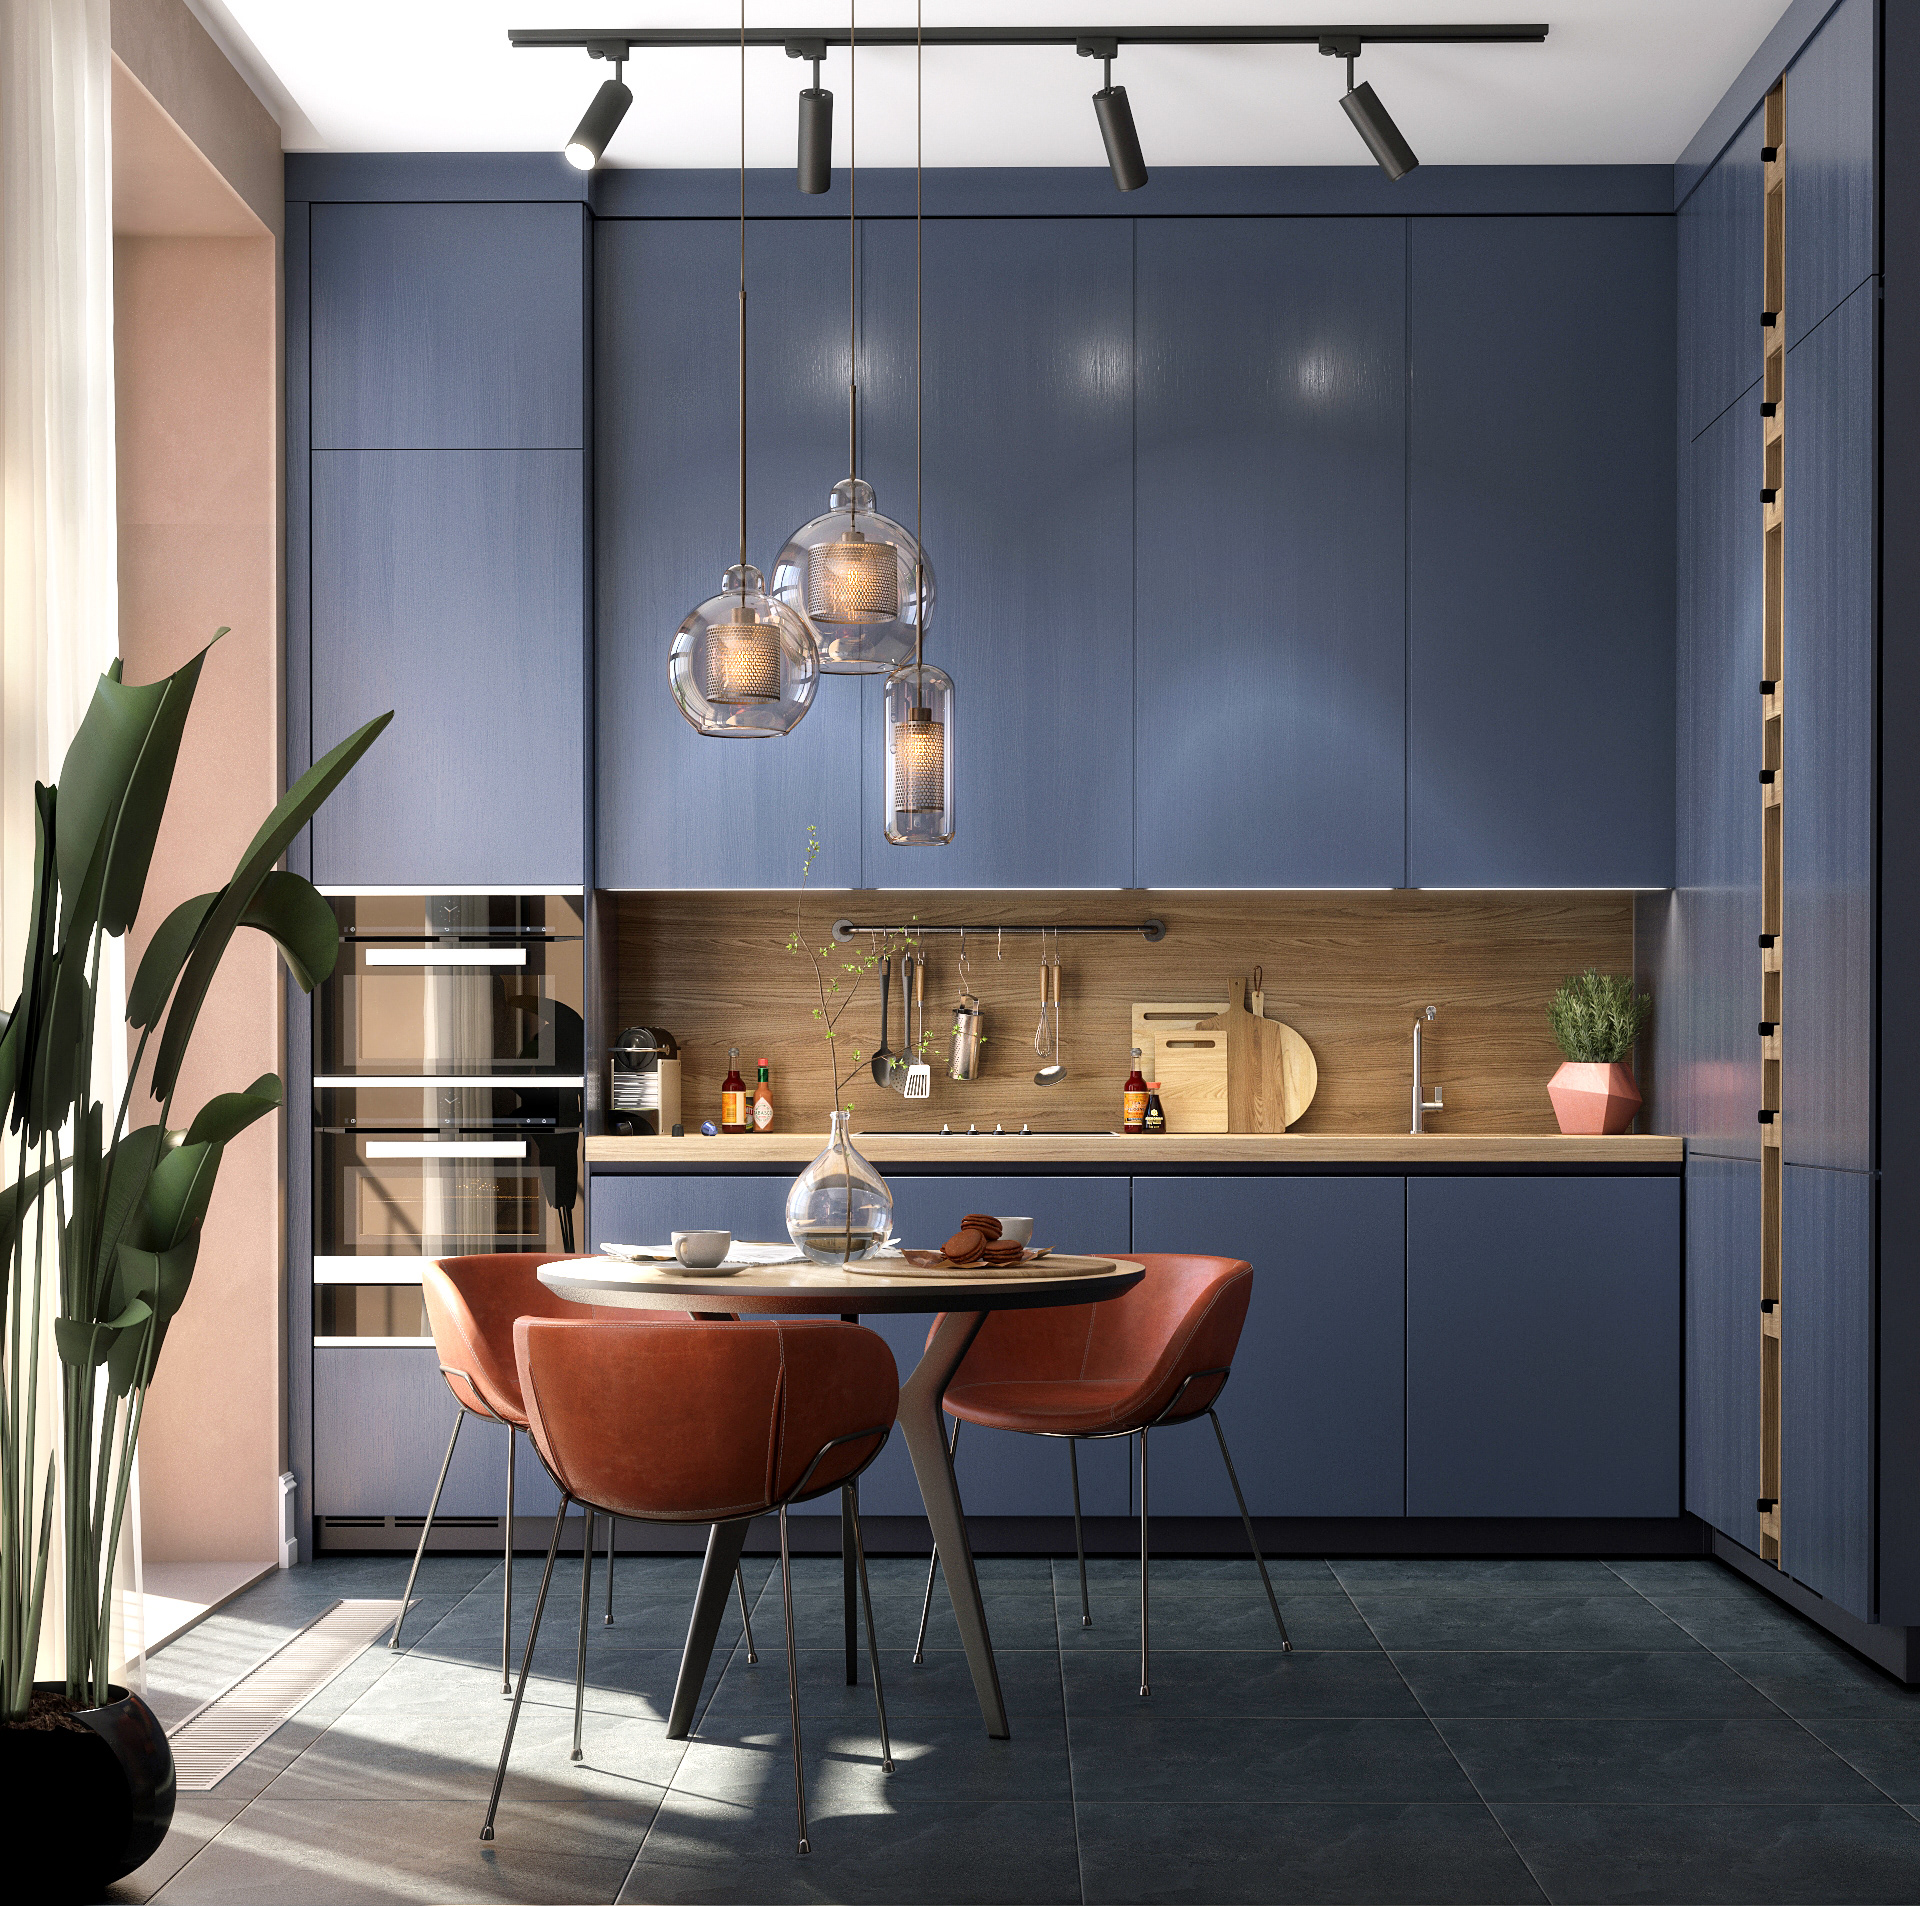  Tủ bếp nổi bật với tông màu xanh navy.